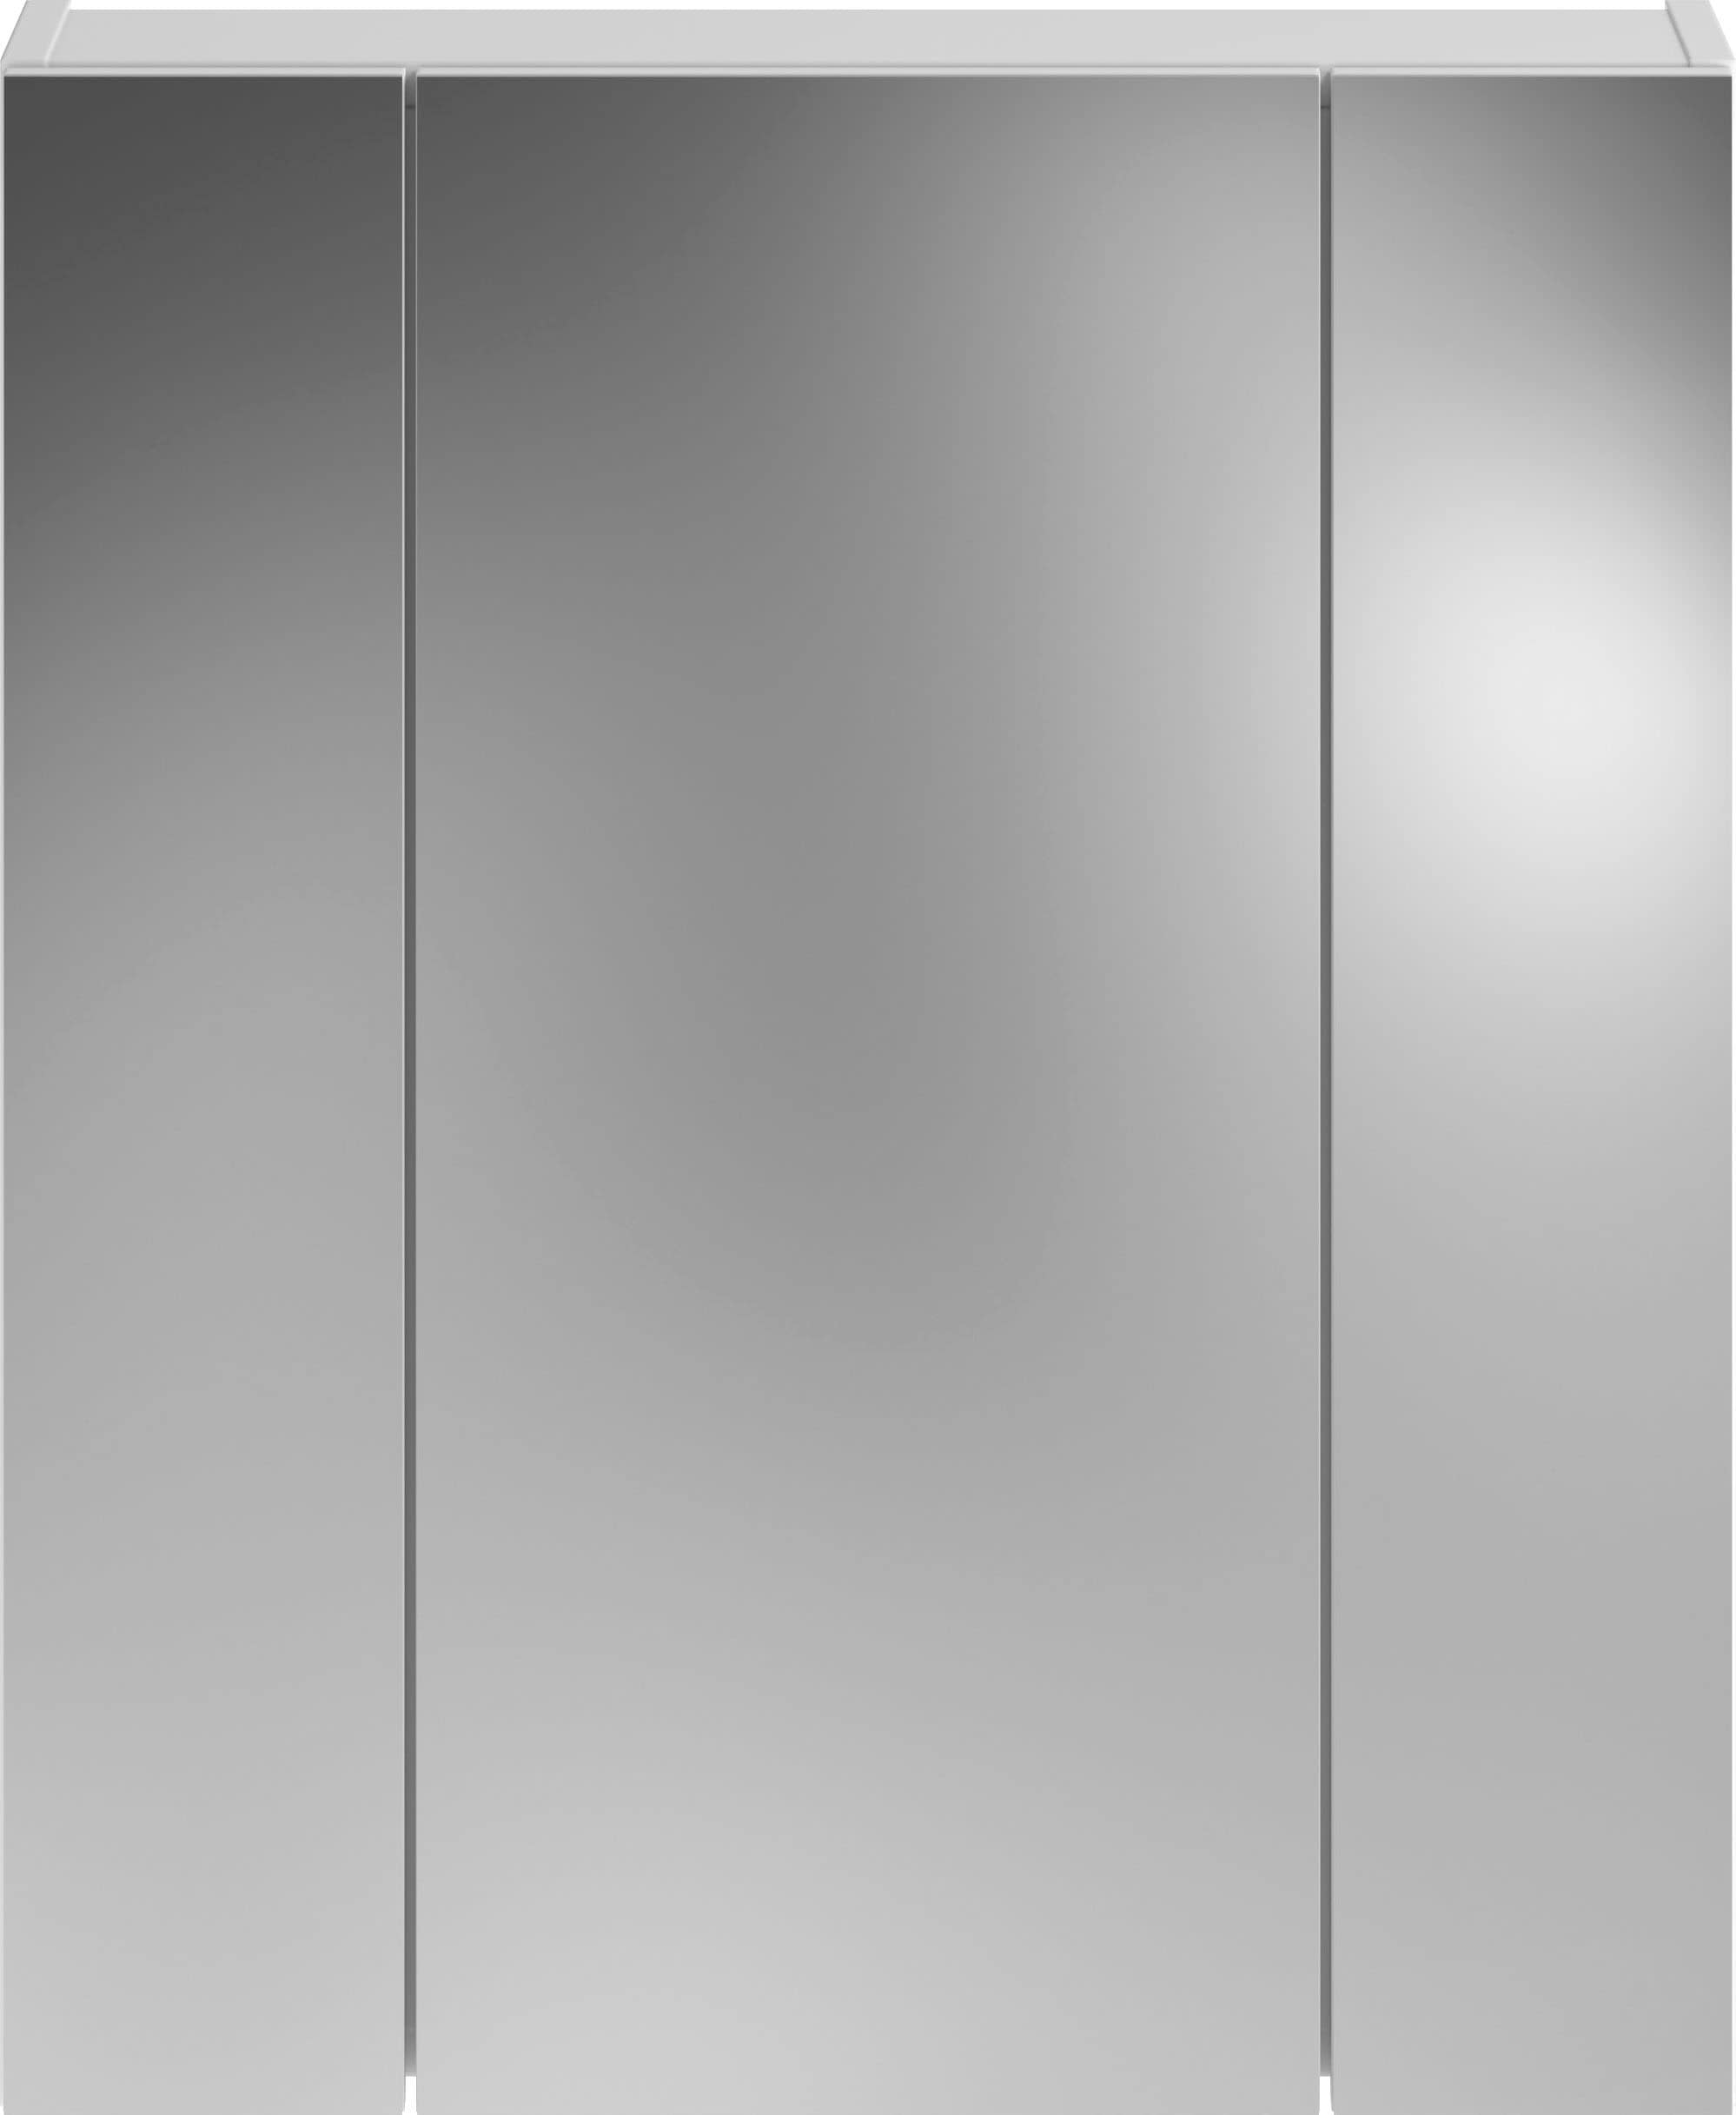 INOSIGN Badezimmerspiegelschrank »Malmö«, Badmöbel, Spiegelschrank, Breite 60 cm